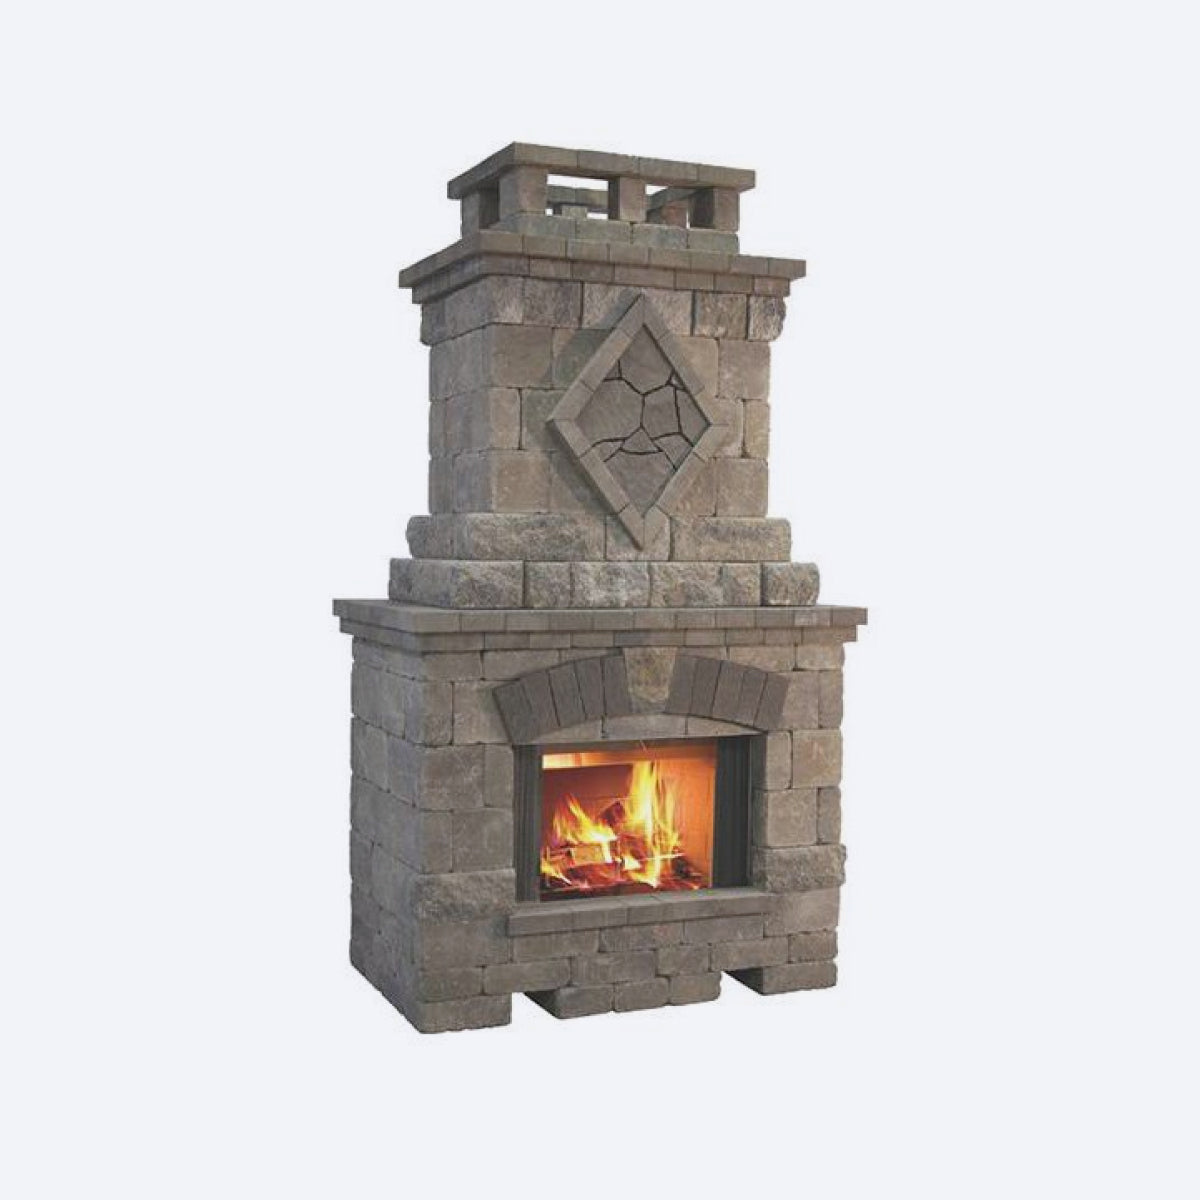 Fireplace |3’D x 5’W x 9’6”H